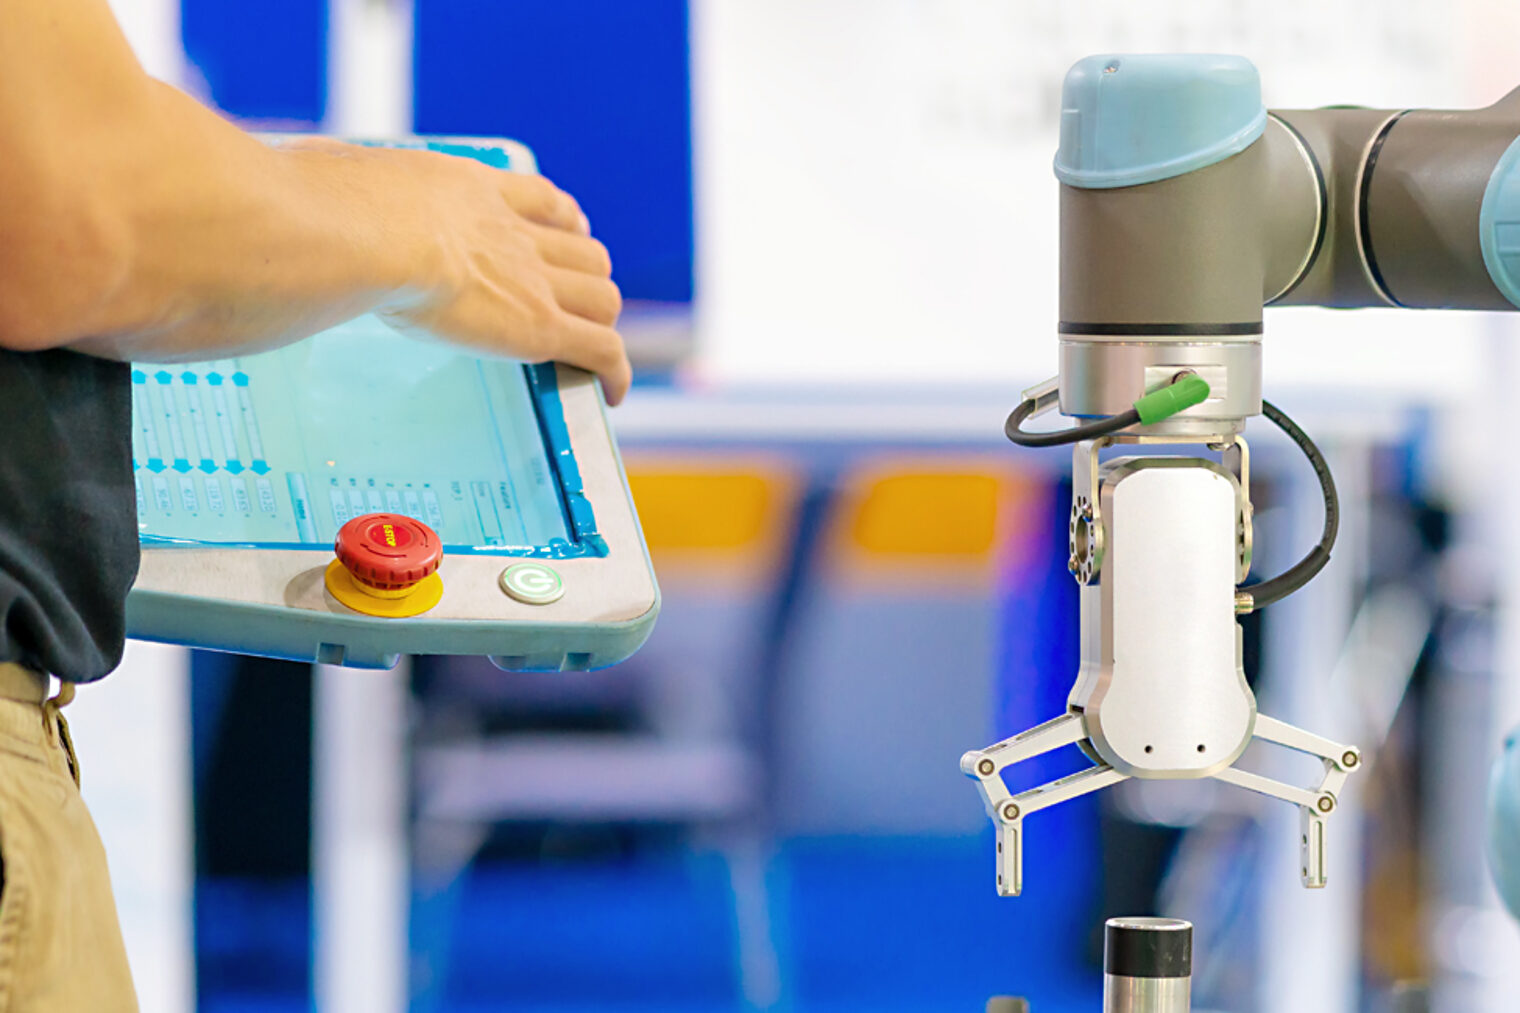 Das Dürener Unternehmen Müller Maschinentechnik reist mit Roboter an und gibt einen Einblick in die Anwendungsgebiete und Chancen von kollaborativen Robotern (Cobots) in Handwerk und Mittelstand.